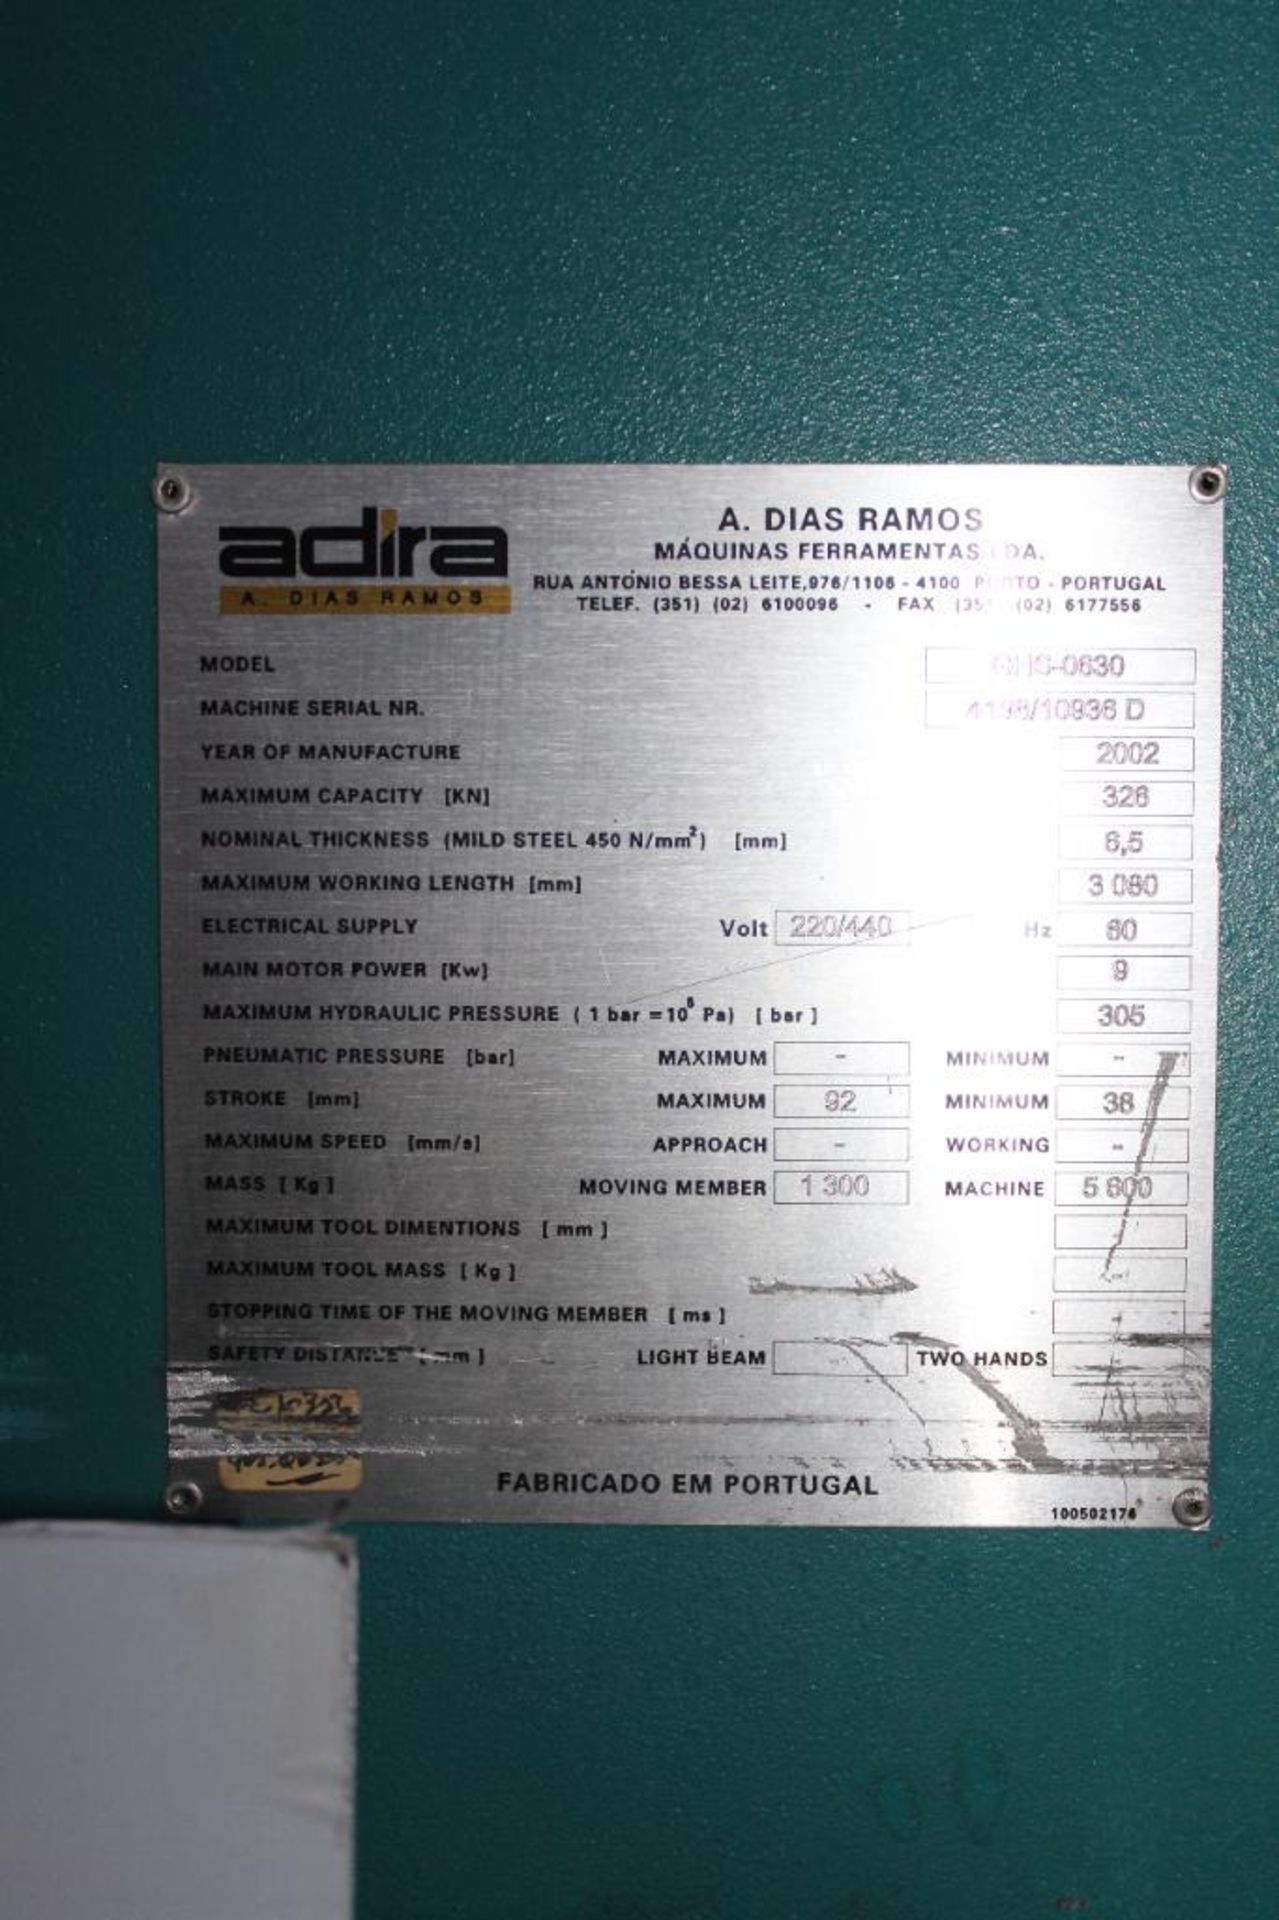 2002 Adira A. Dias Ramos Shearer Model GHS-0630 - Image 9 of 17